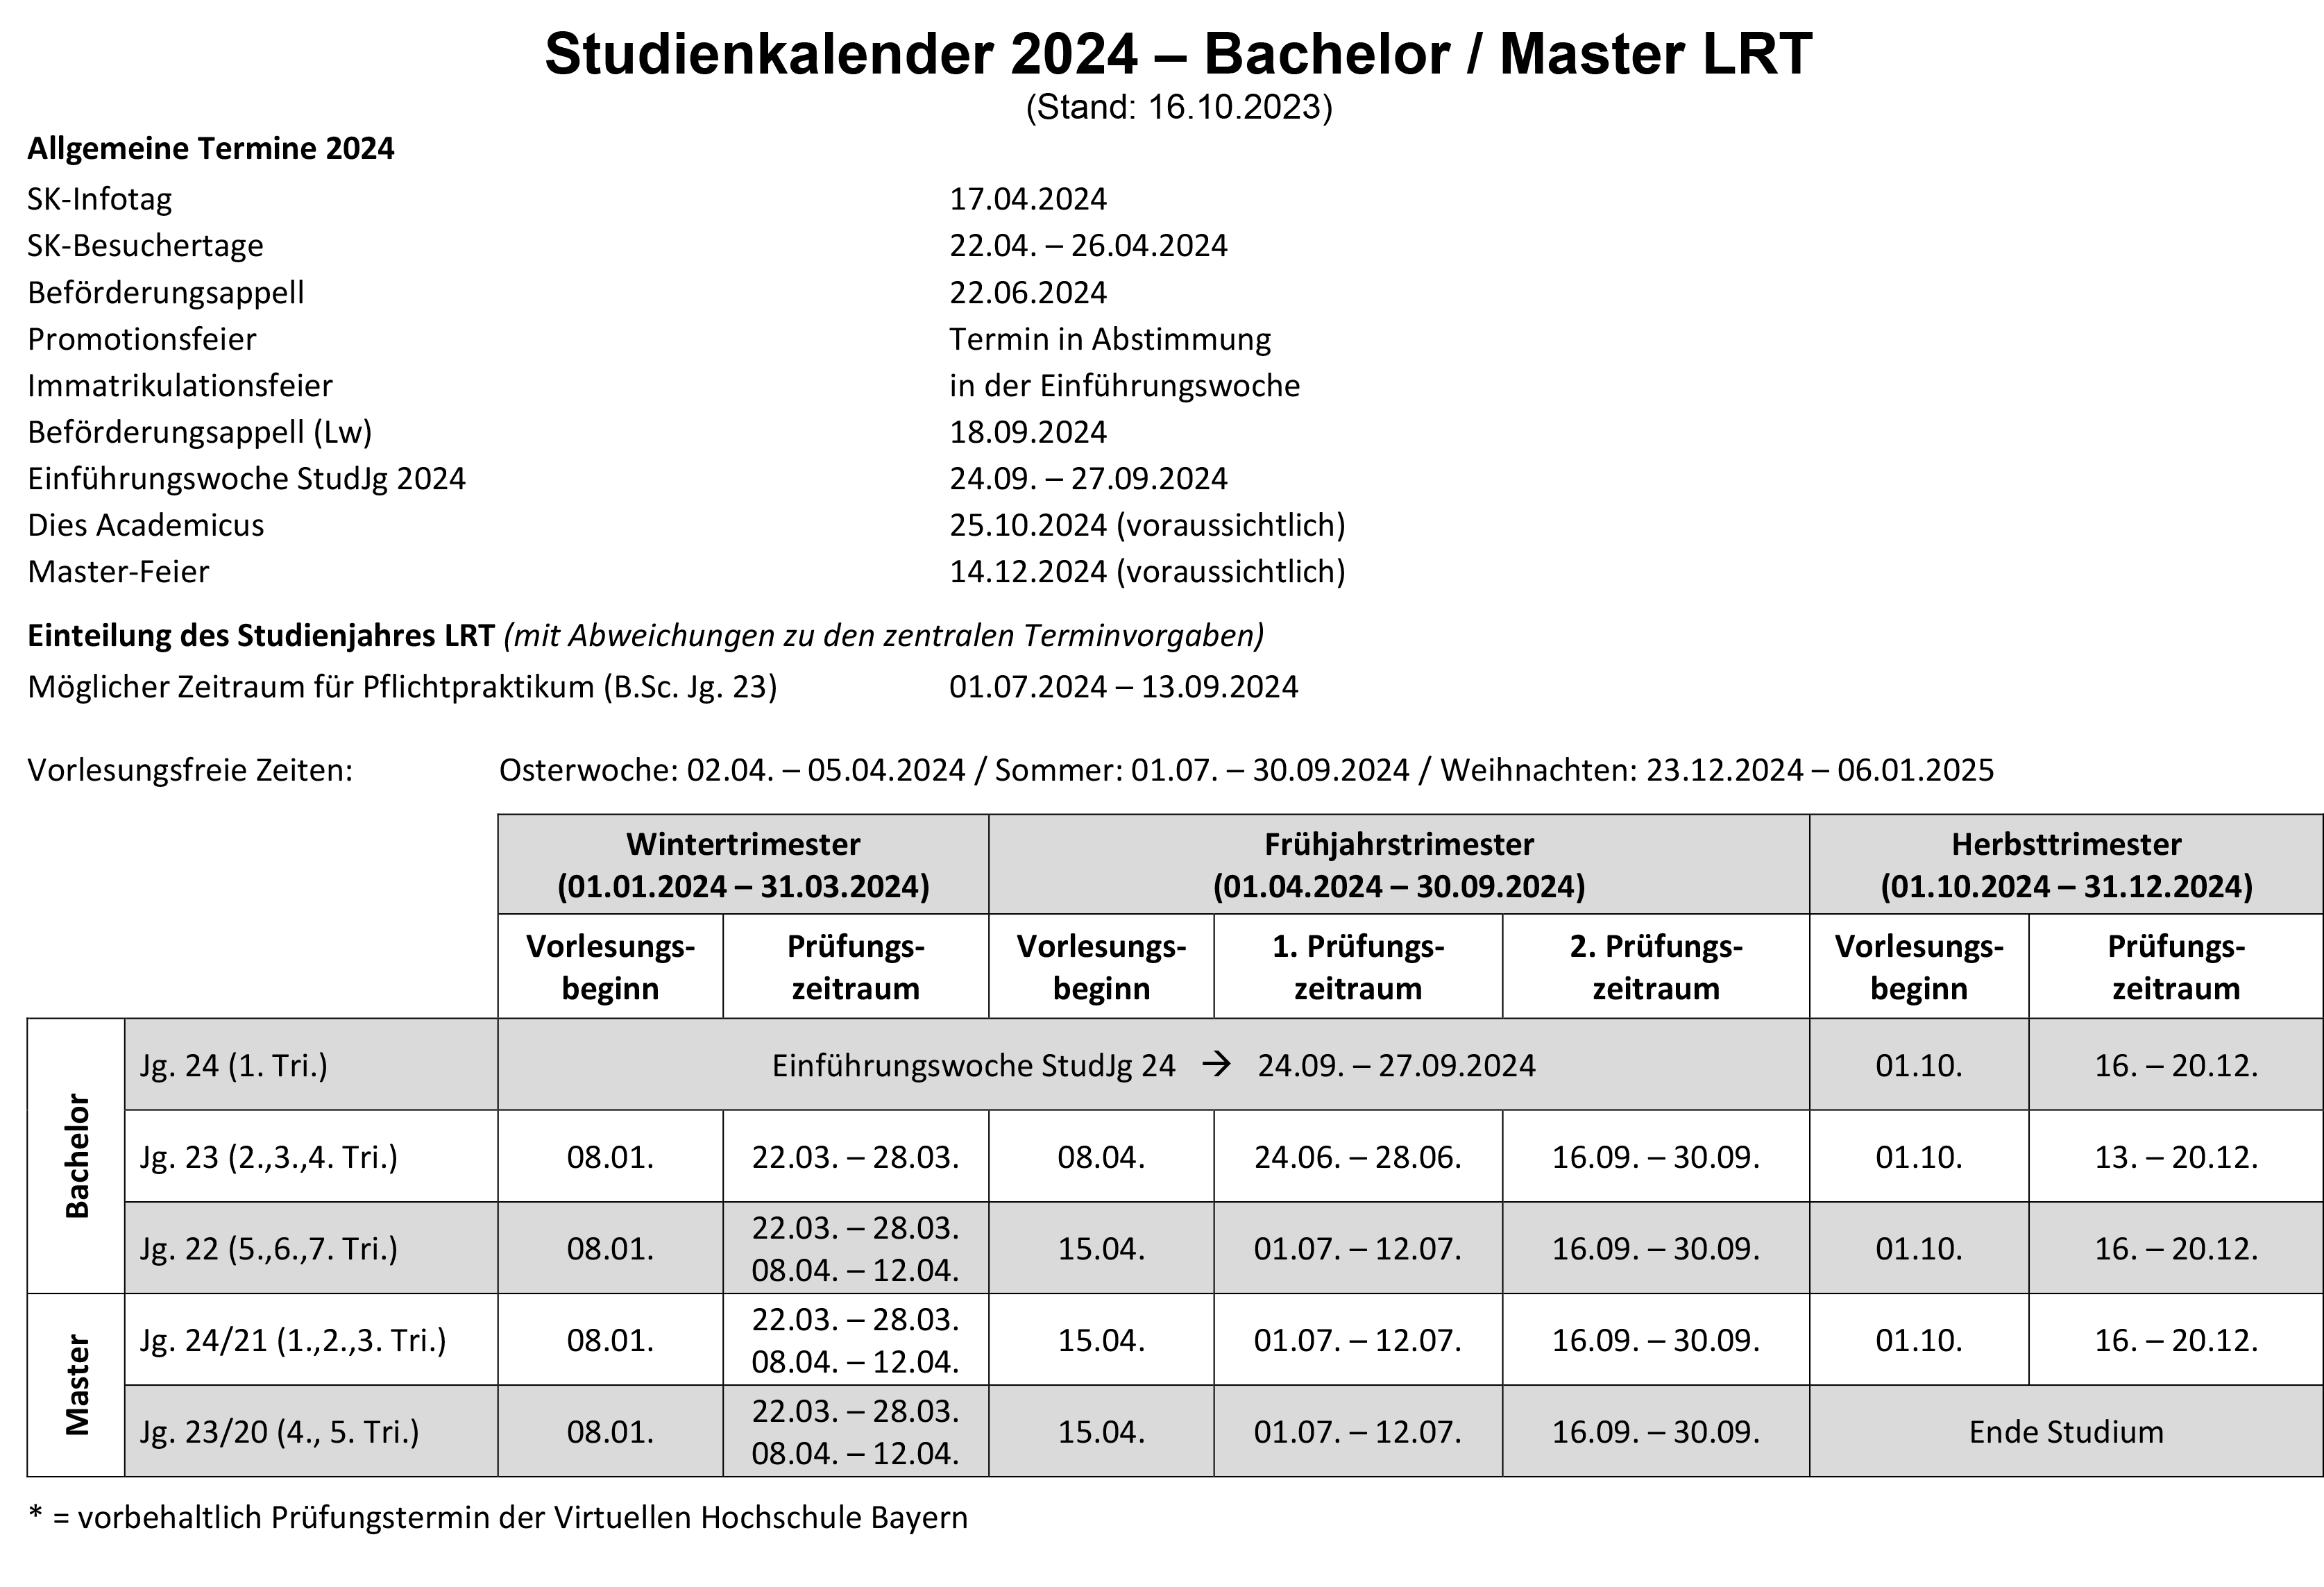 Studienkalender LRT - 2024 (Stand 16.10.).png